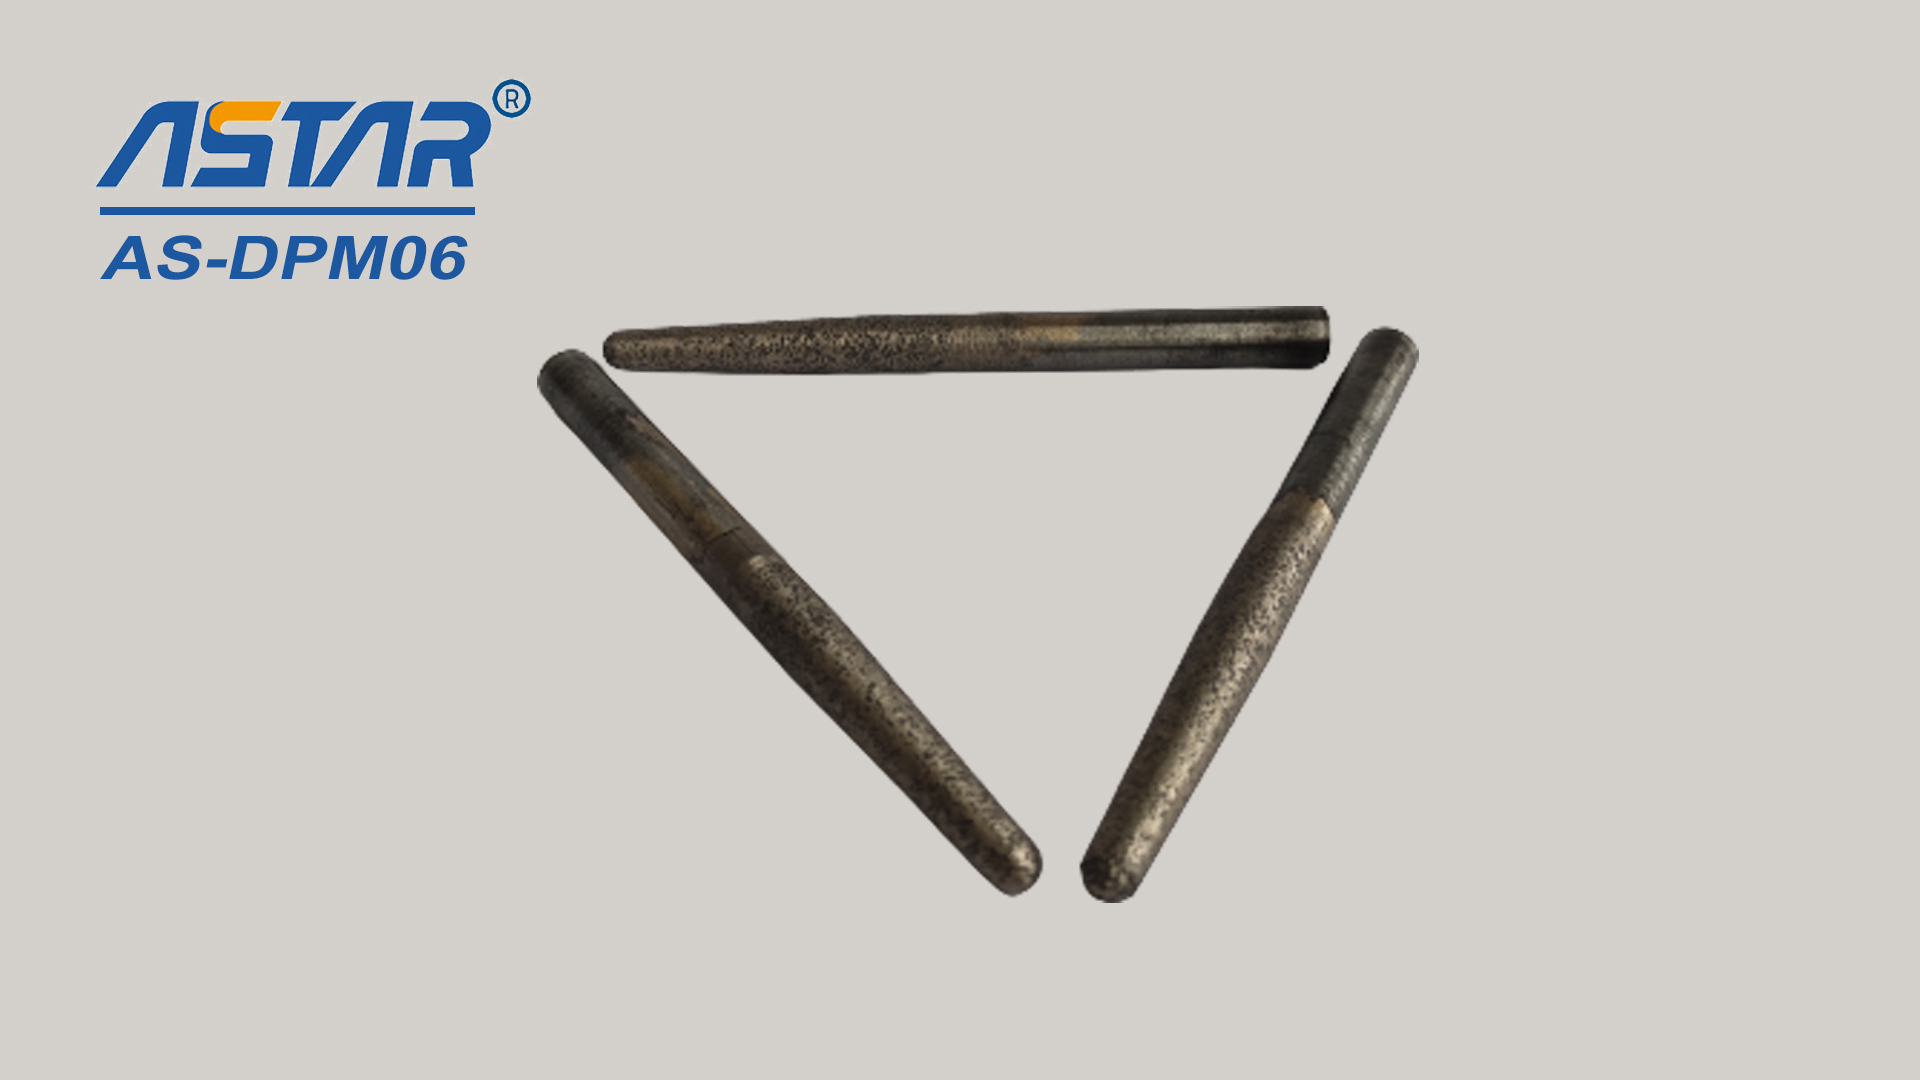 Diamantové kovové kuželové hroty se používají k broušení a leštění malých ploch, otvorů a drážek o průměru 6 mm až 12 mm